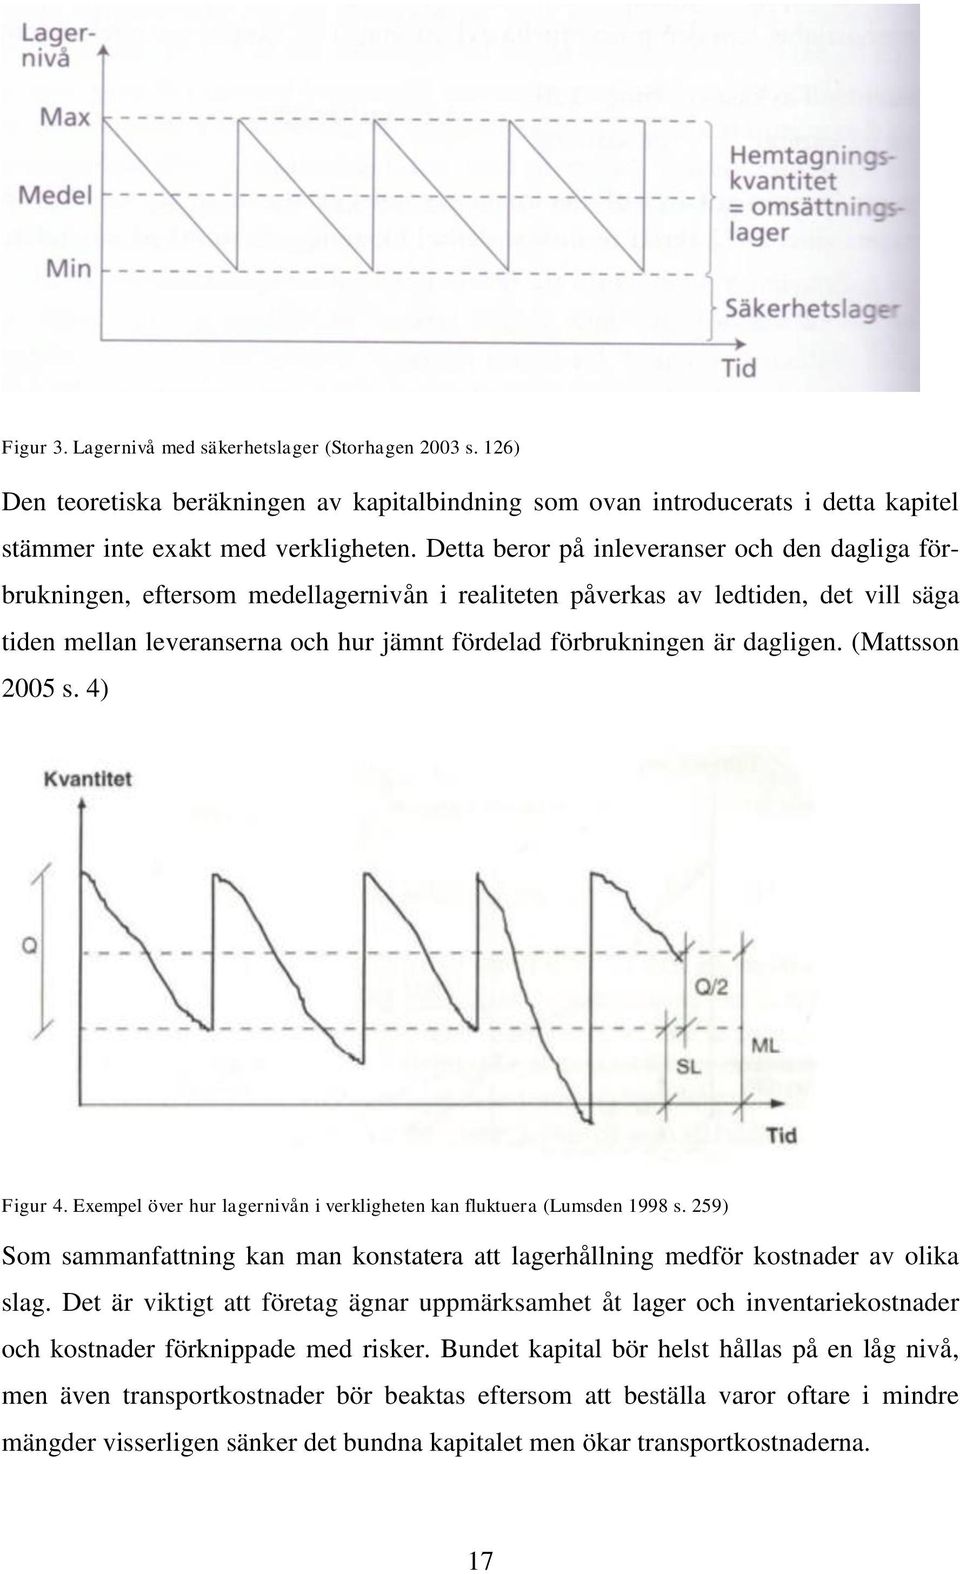 dagligen. (Mattsson 2005 s. 4) Figur 4. Exempel över hur lagernivån i verkligheten kan fluktuera (Lumsden 1998 s.